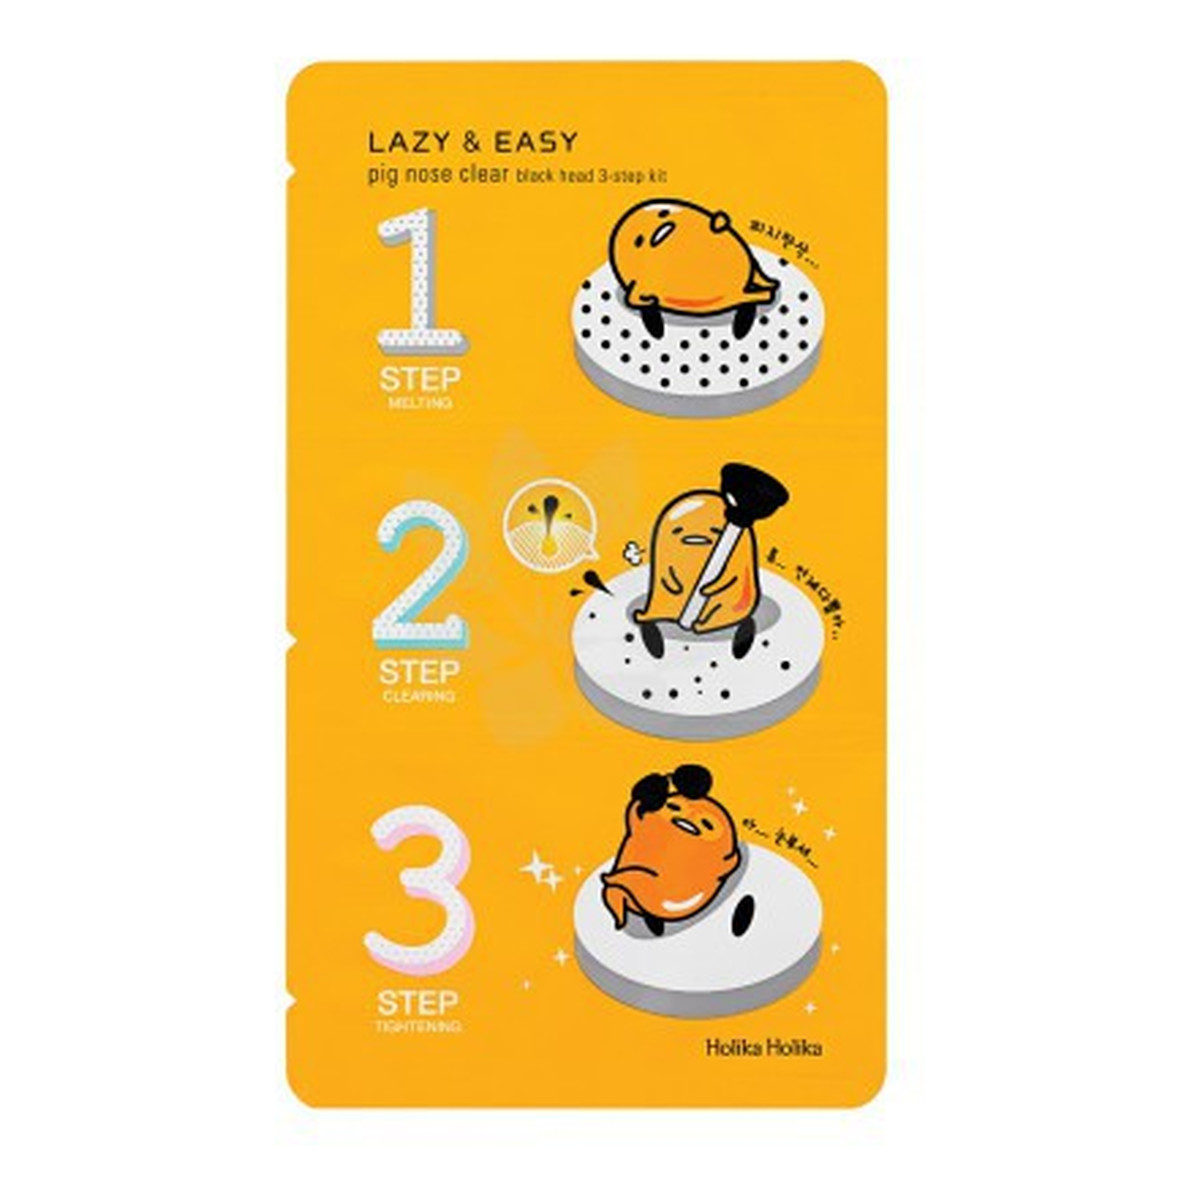 Holika Holika Lazy&Easy Pig Nose Clear 3-Step Kit Gudetama Zestaw 3 Plasterków Dogłębnie Oczyszczających Pory